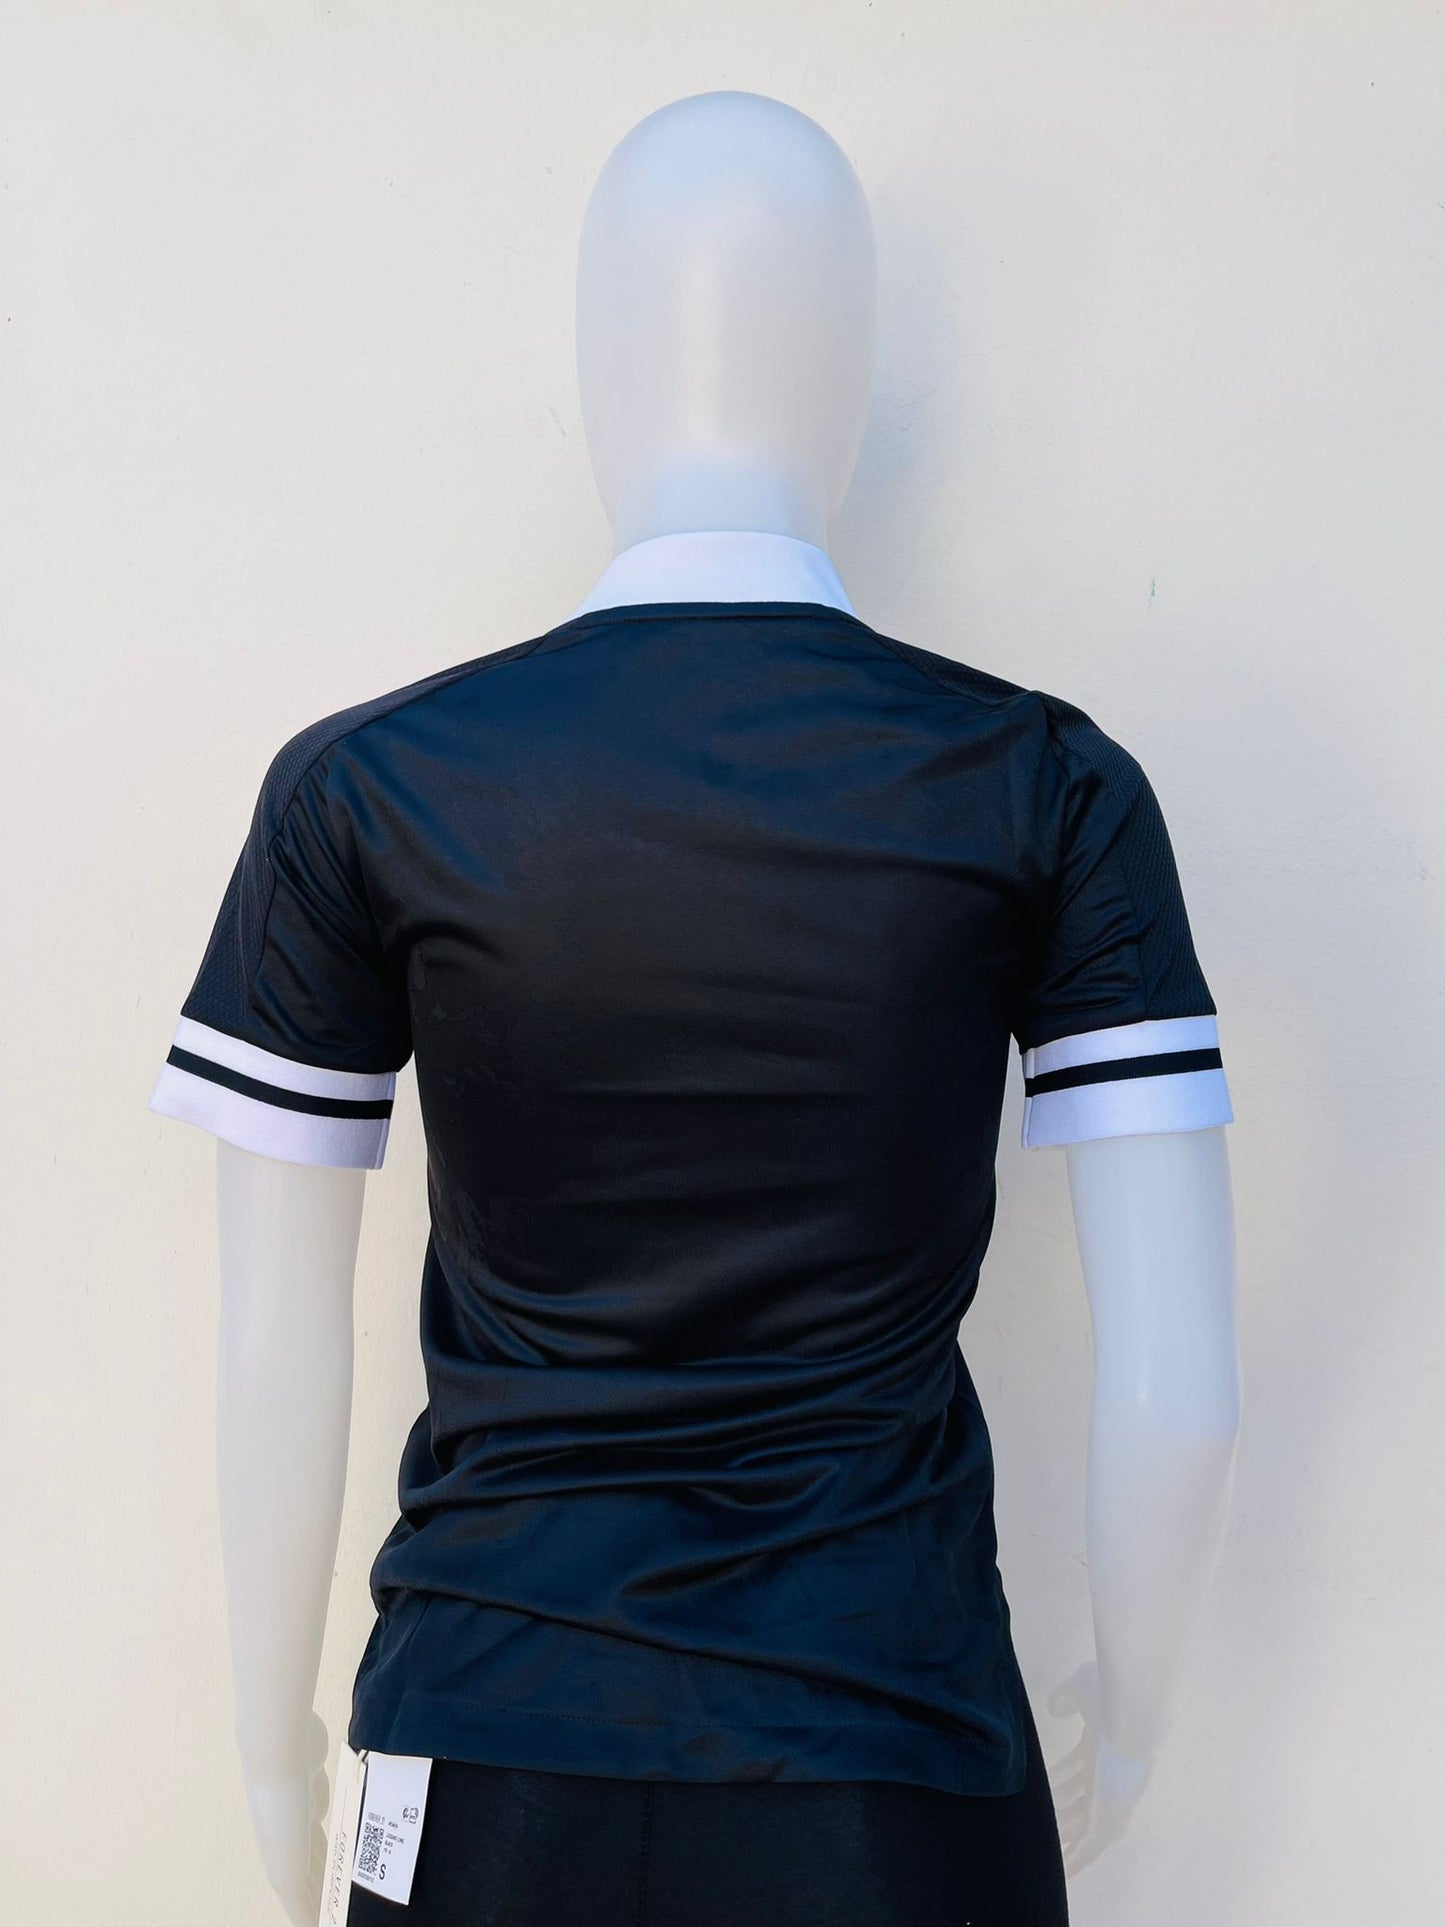 T-shirt Adidas original de color negro con raya blancas de n las mangas cuello de color blanco diseño de logo y letra ADIDAS en color blanco al frente en tela deportiva